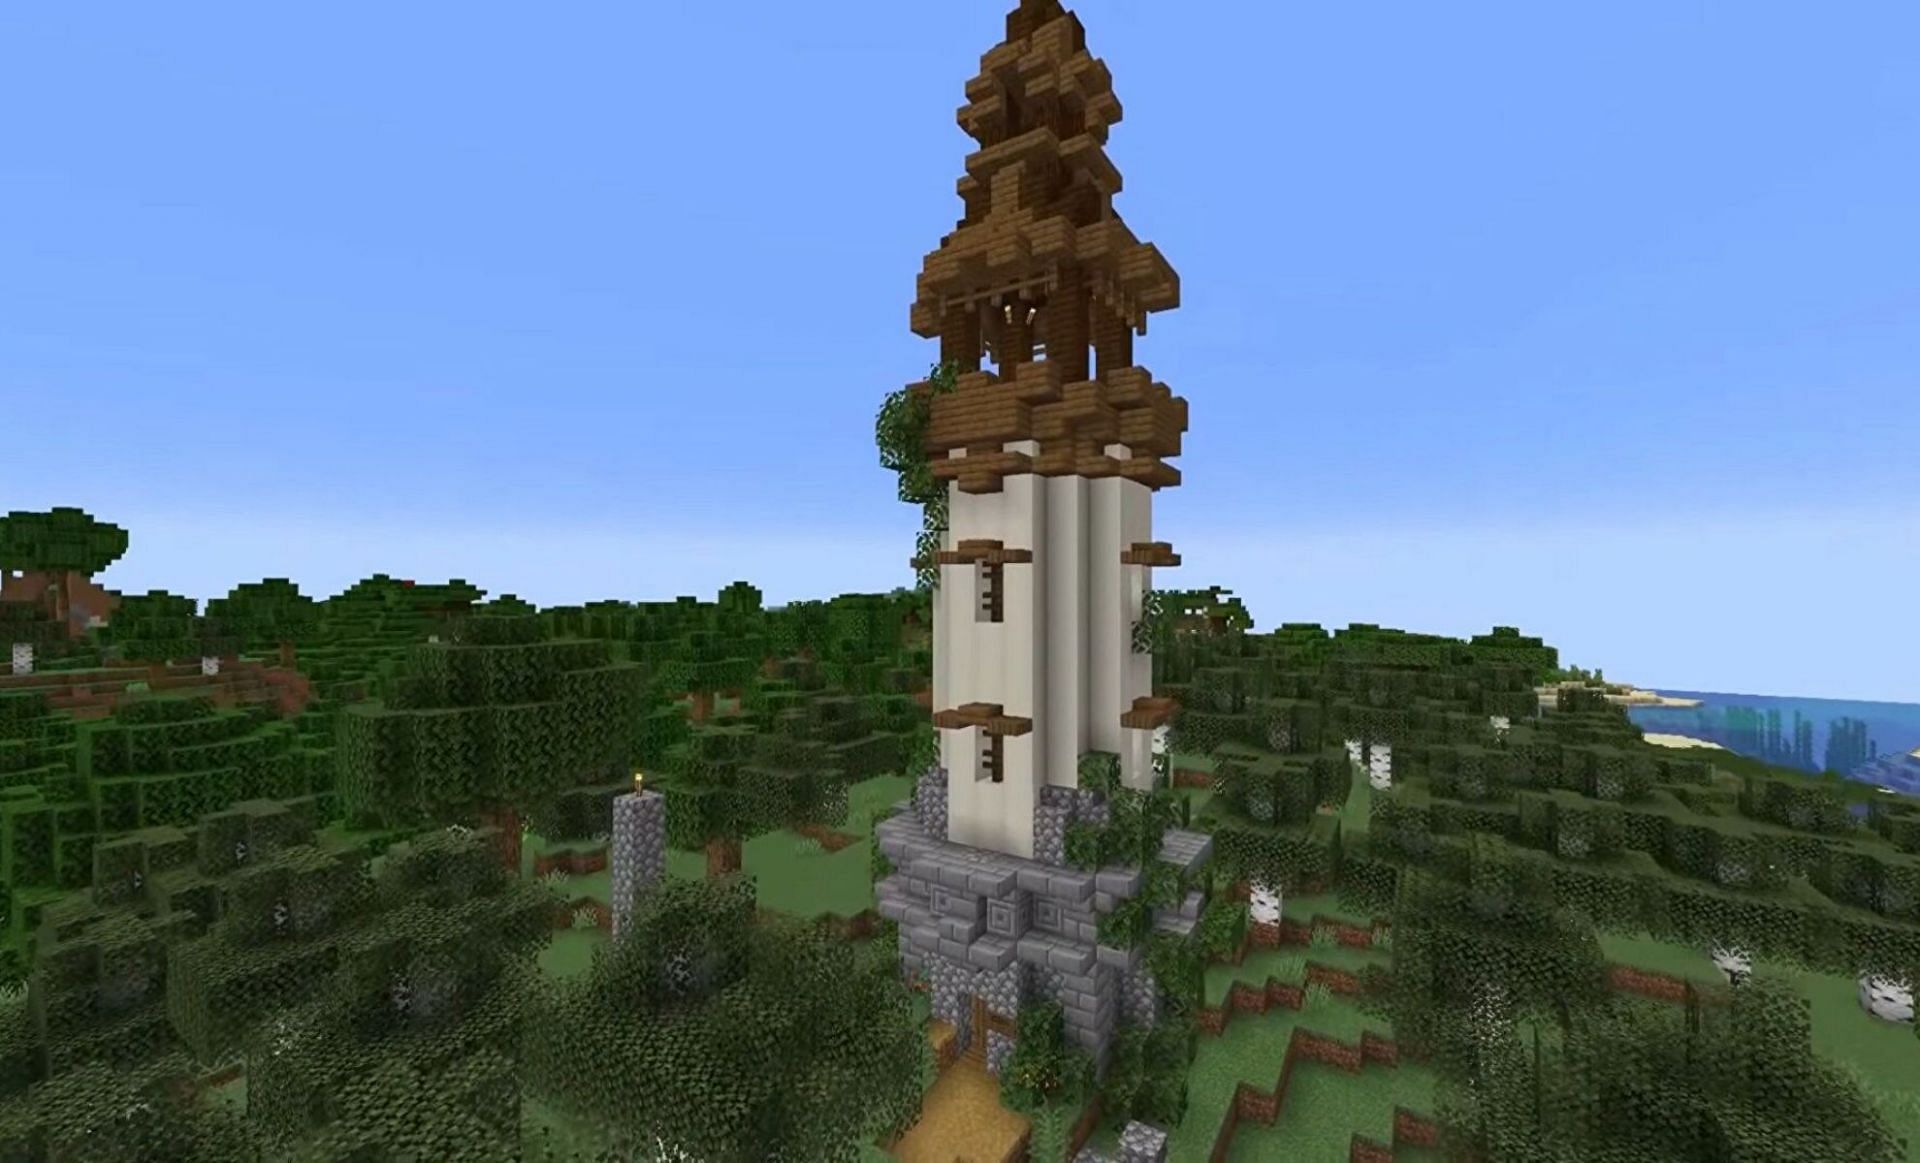 Defense Tower in Minecraft IG: @minecraft.luki7